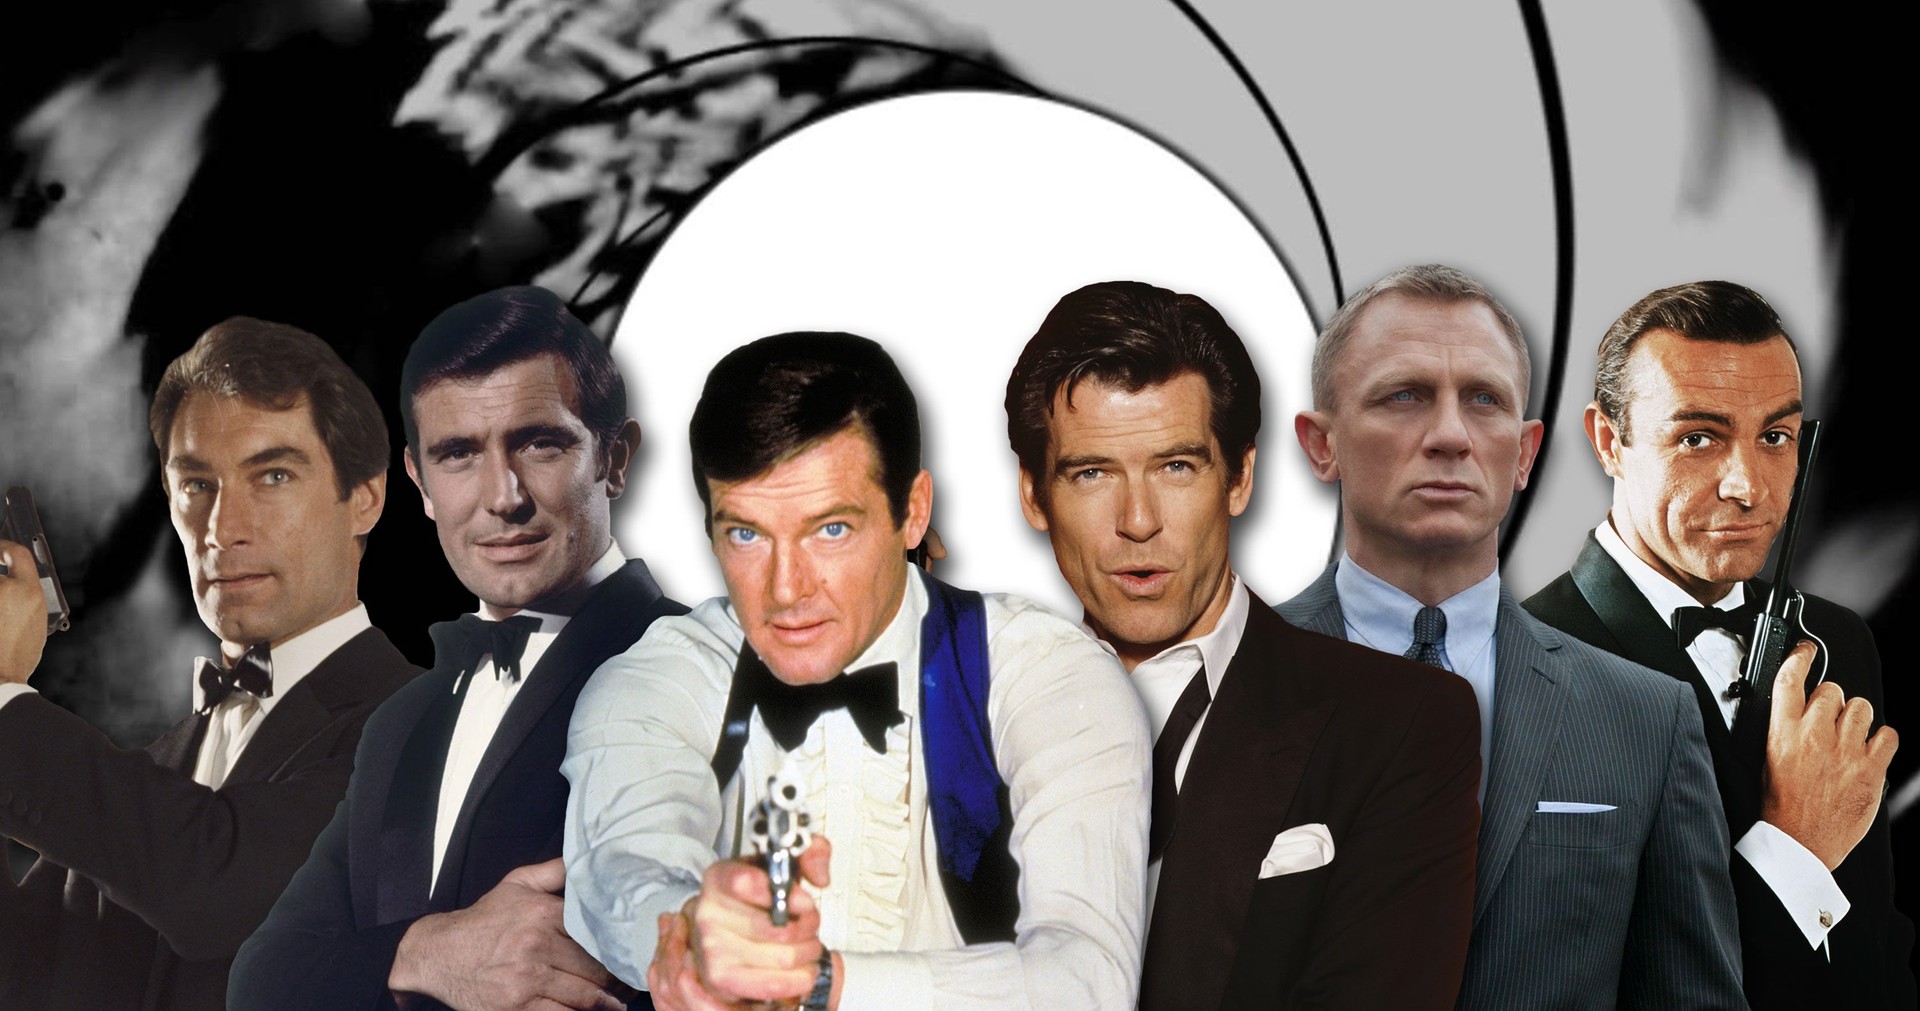 بازیگر جیمز باند بعدی چه کسی خواهد بود؟